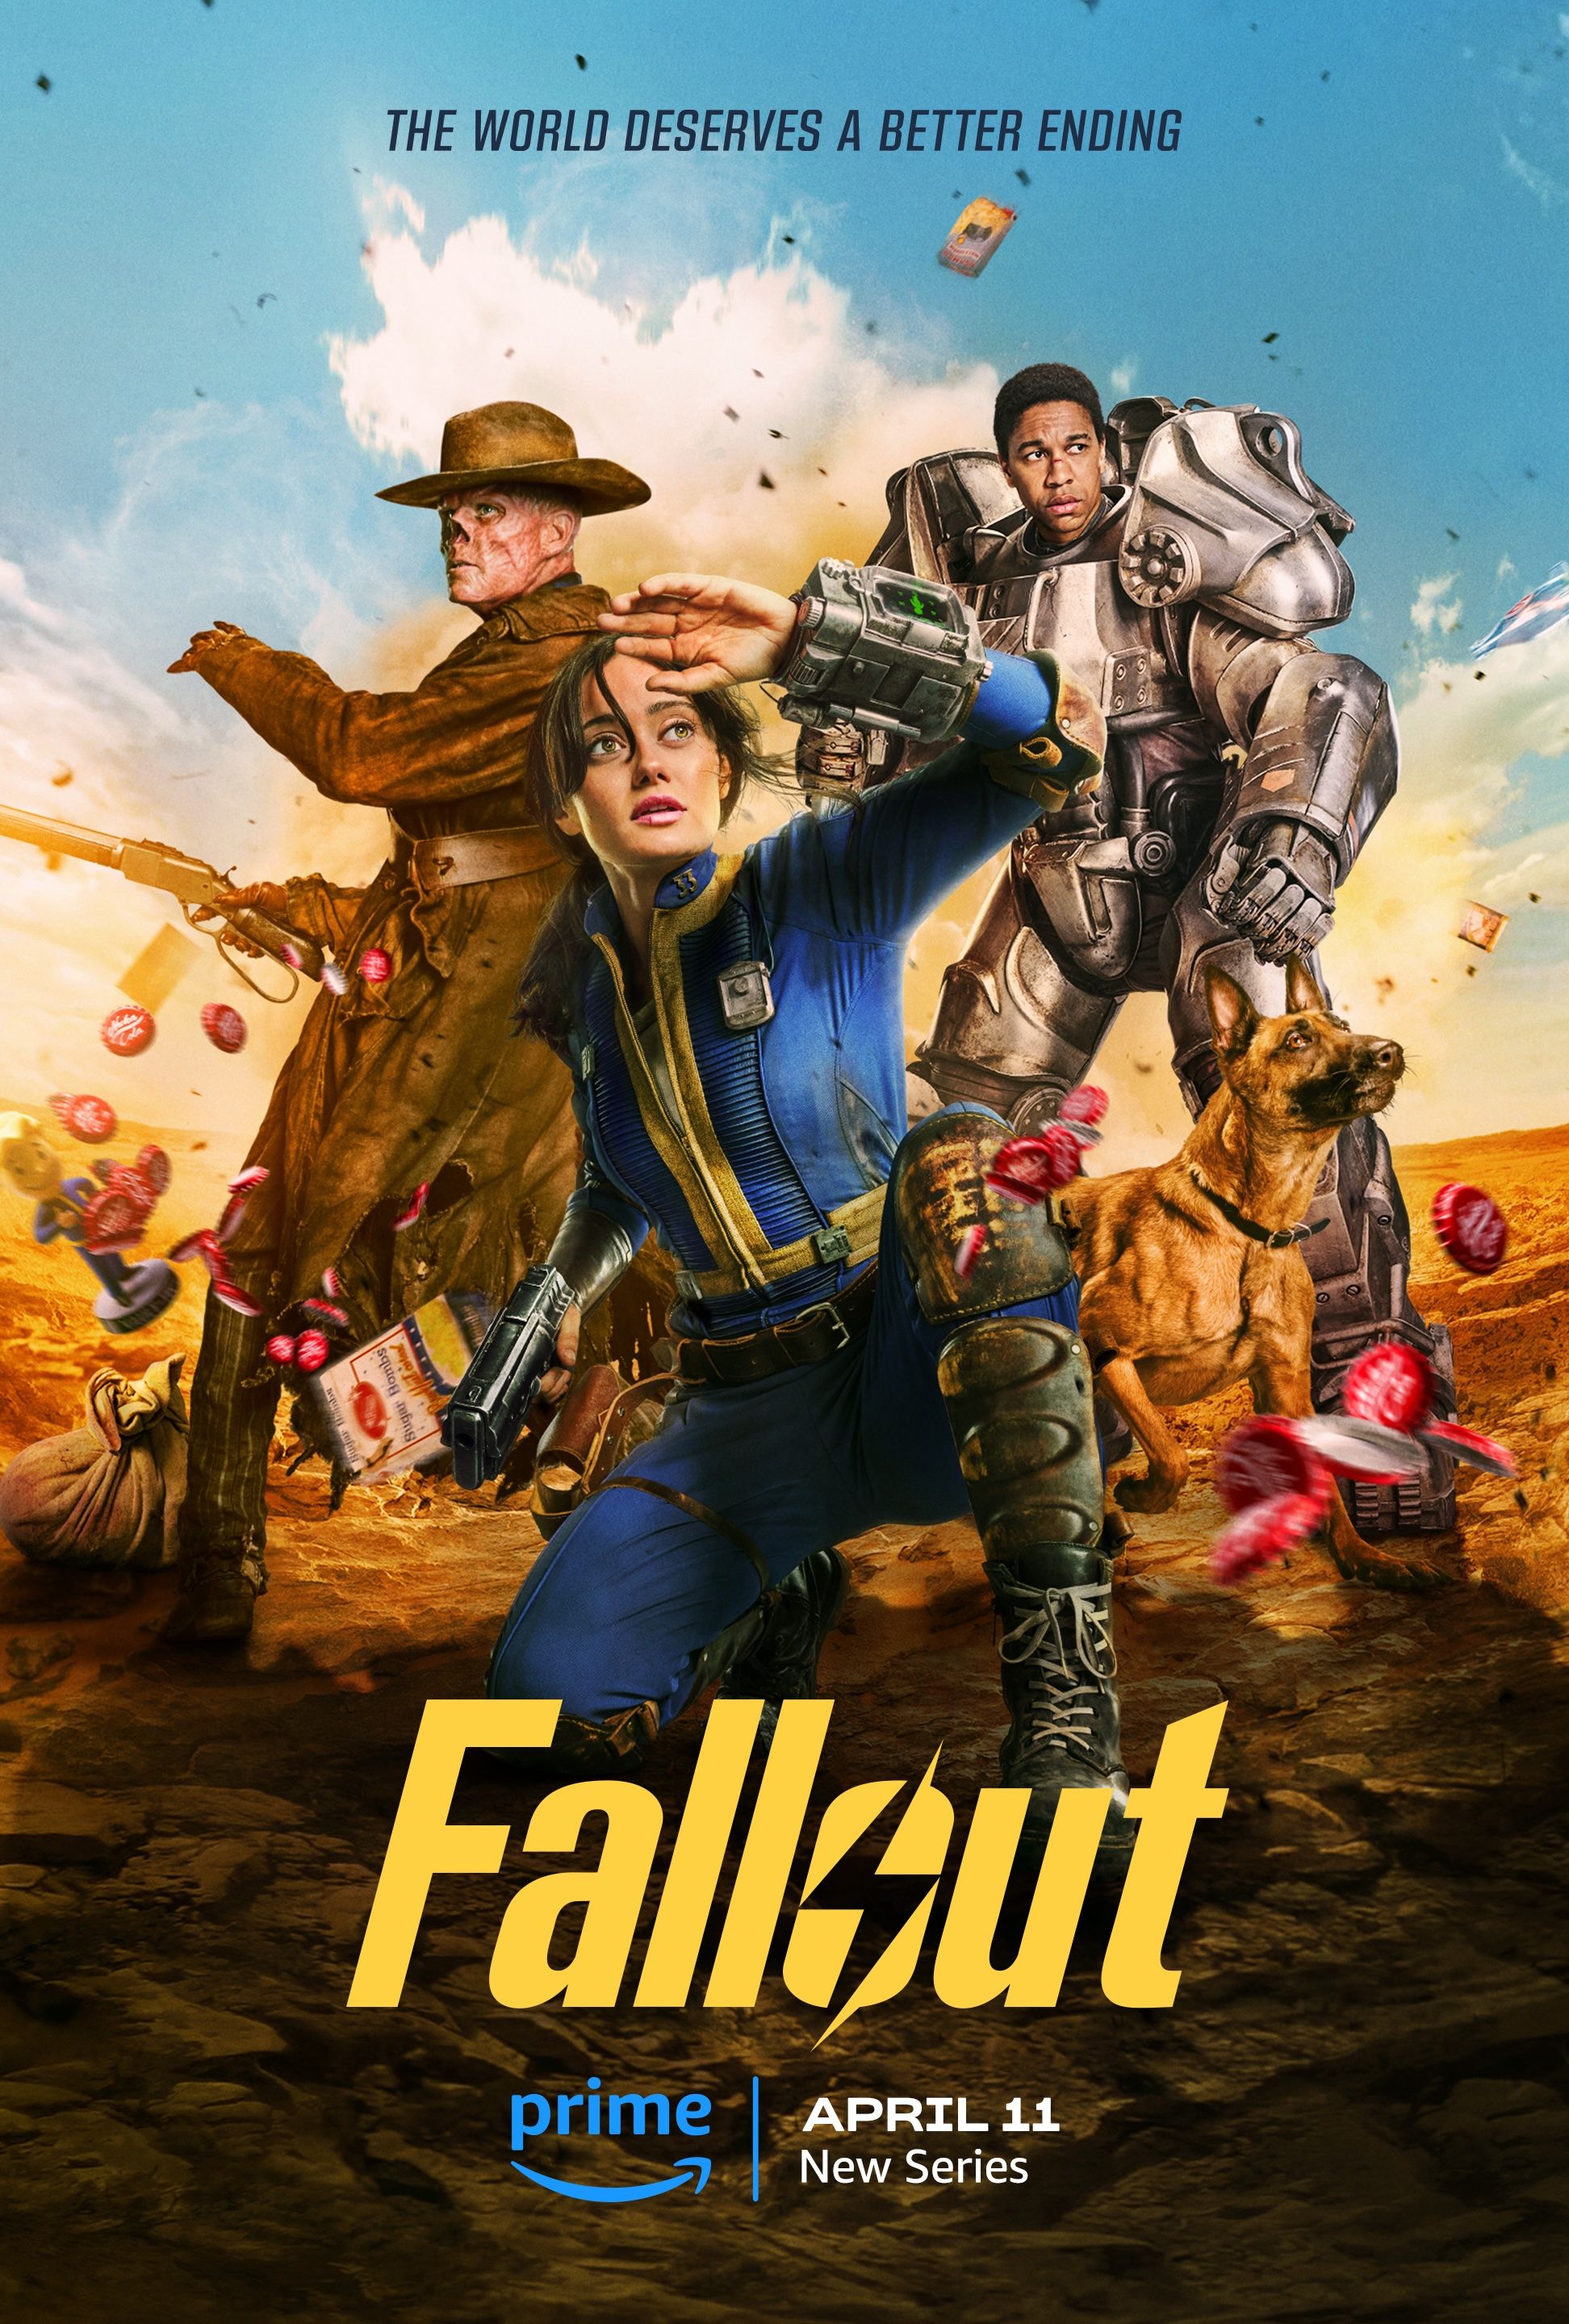 Póster del programa de televisión Fallout que muestra a Lucy, CX404, Ghoul y Maximus frente a una explosión con tapas de botellas voladoras